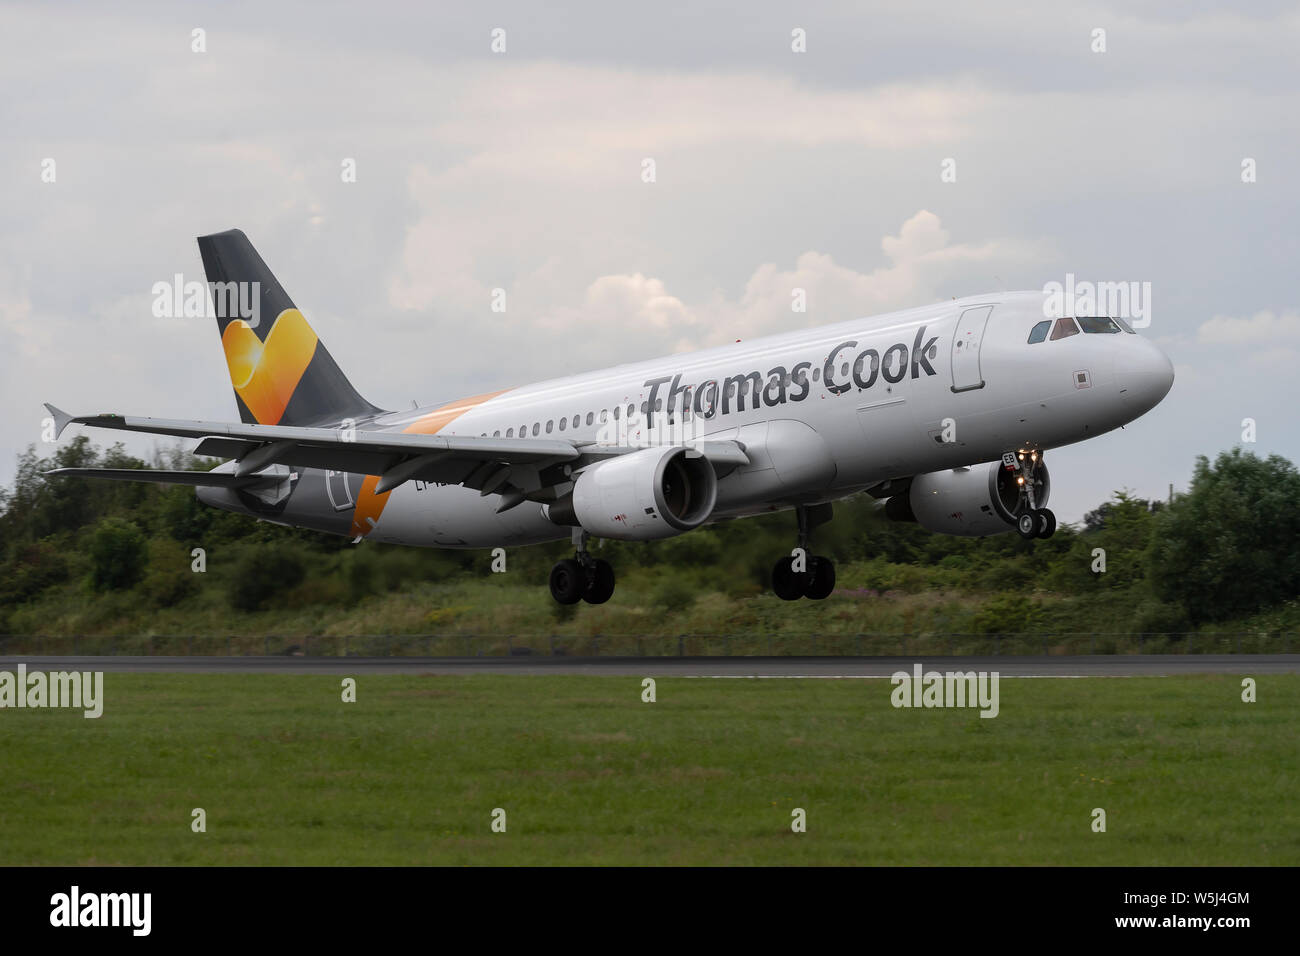 Un Thomas Cook Airlines Airbus A320-200 atterrit à l'Aéroport International de Manchester (usage éditorial uniquement) Banque D'Images